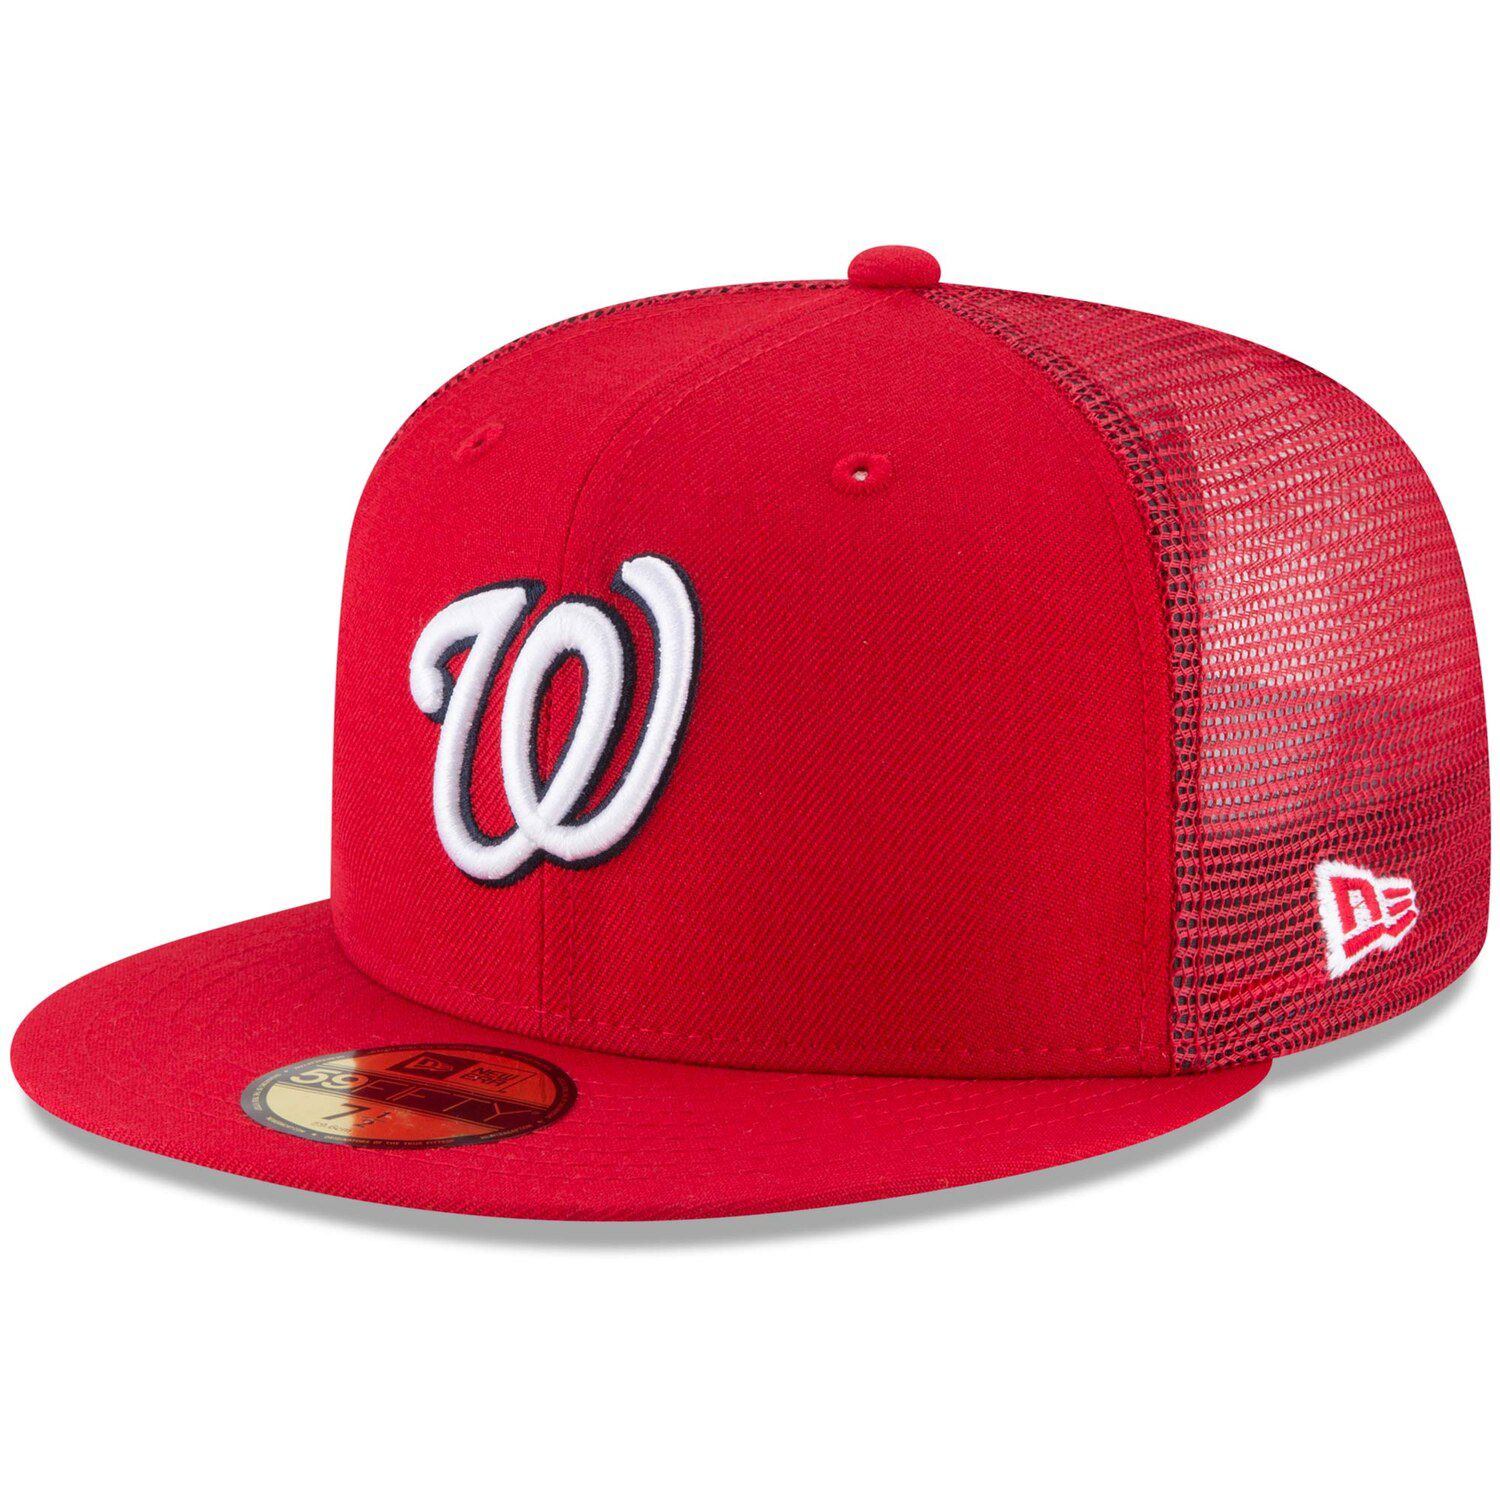 nationals baseball cap